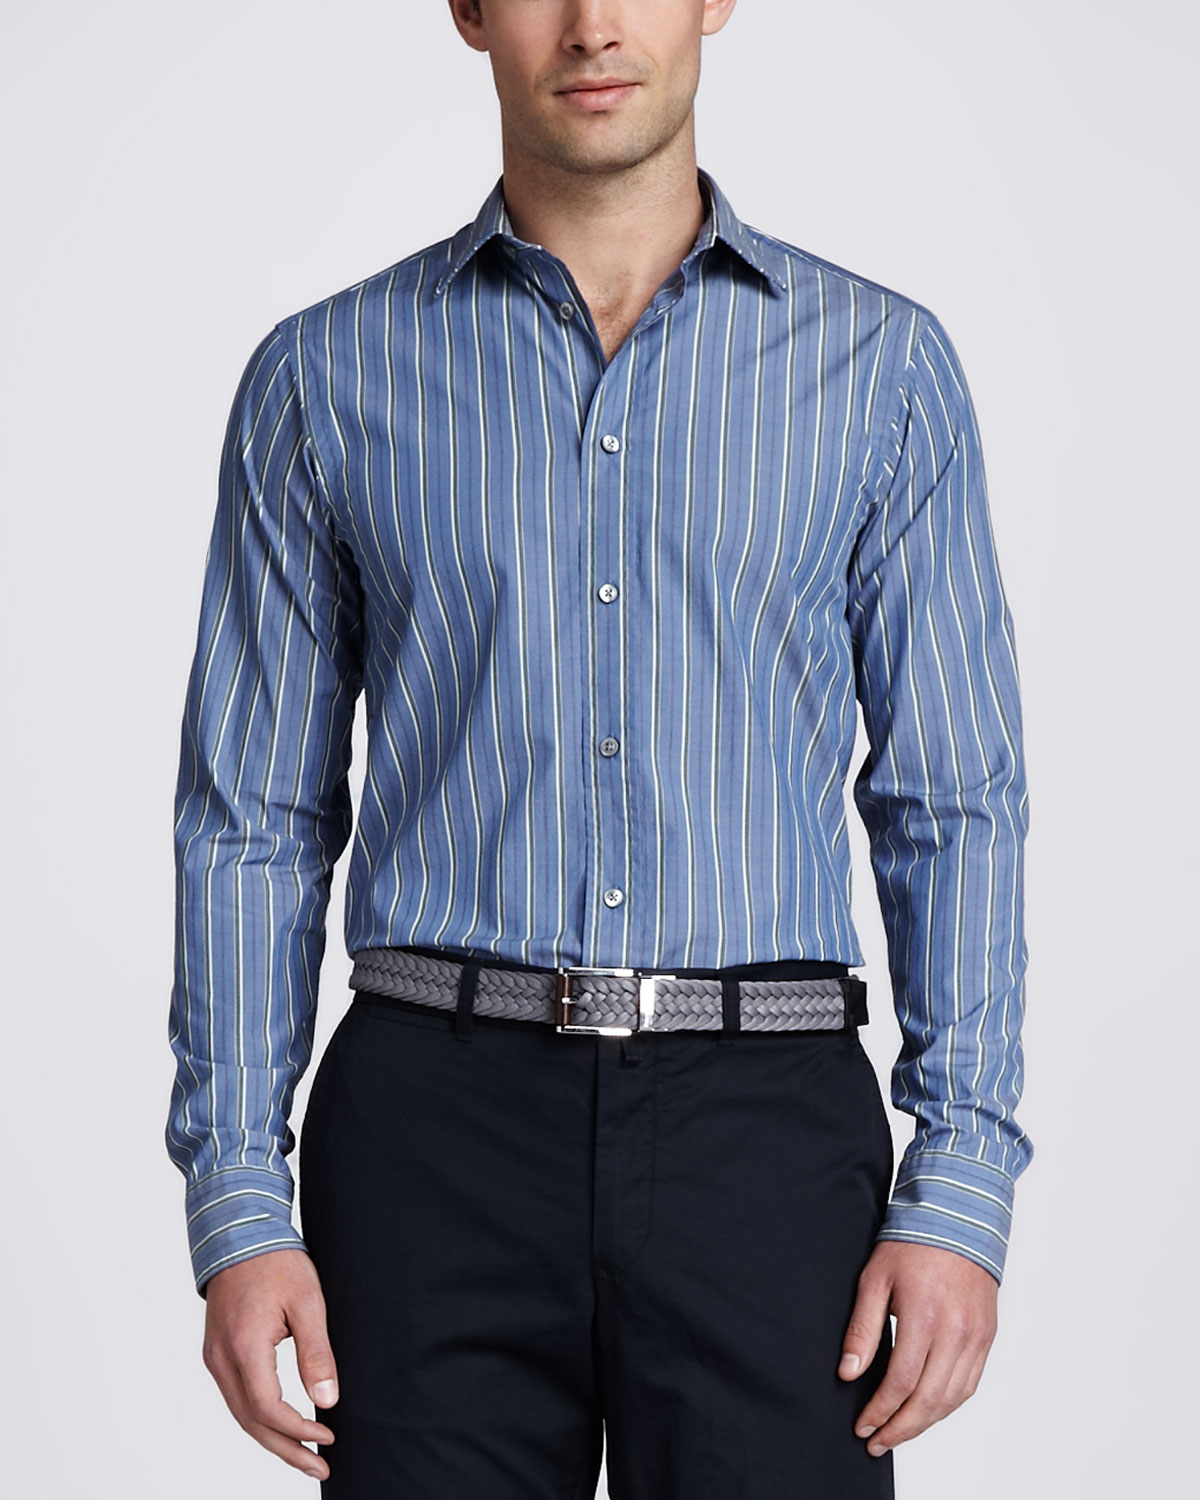 zegna-sport-blue-vertical-striped-poplin-sport-shirt-blue-product-1-10704946-636035841.jpeg